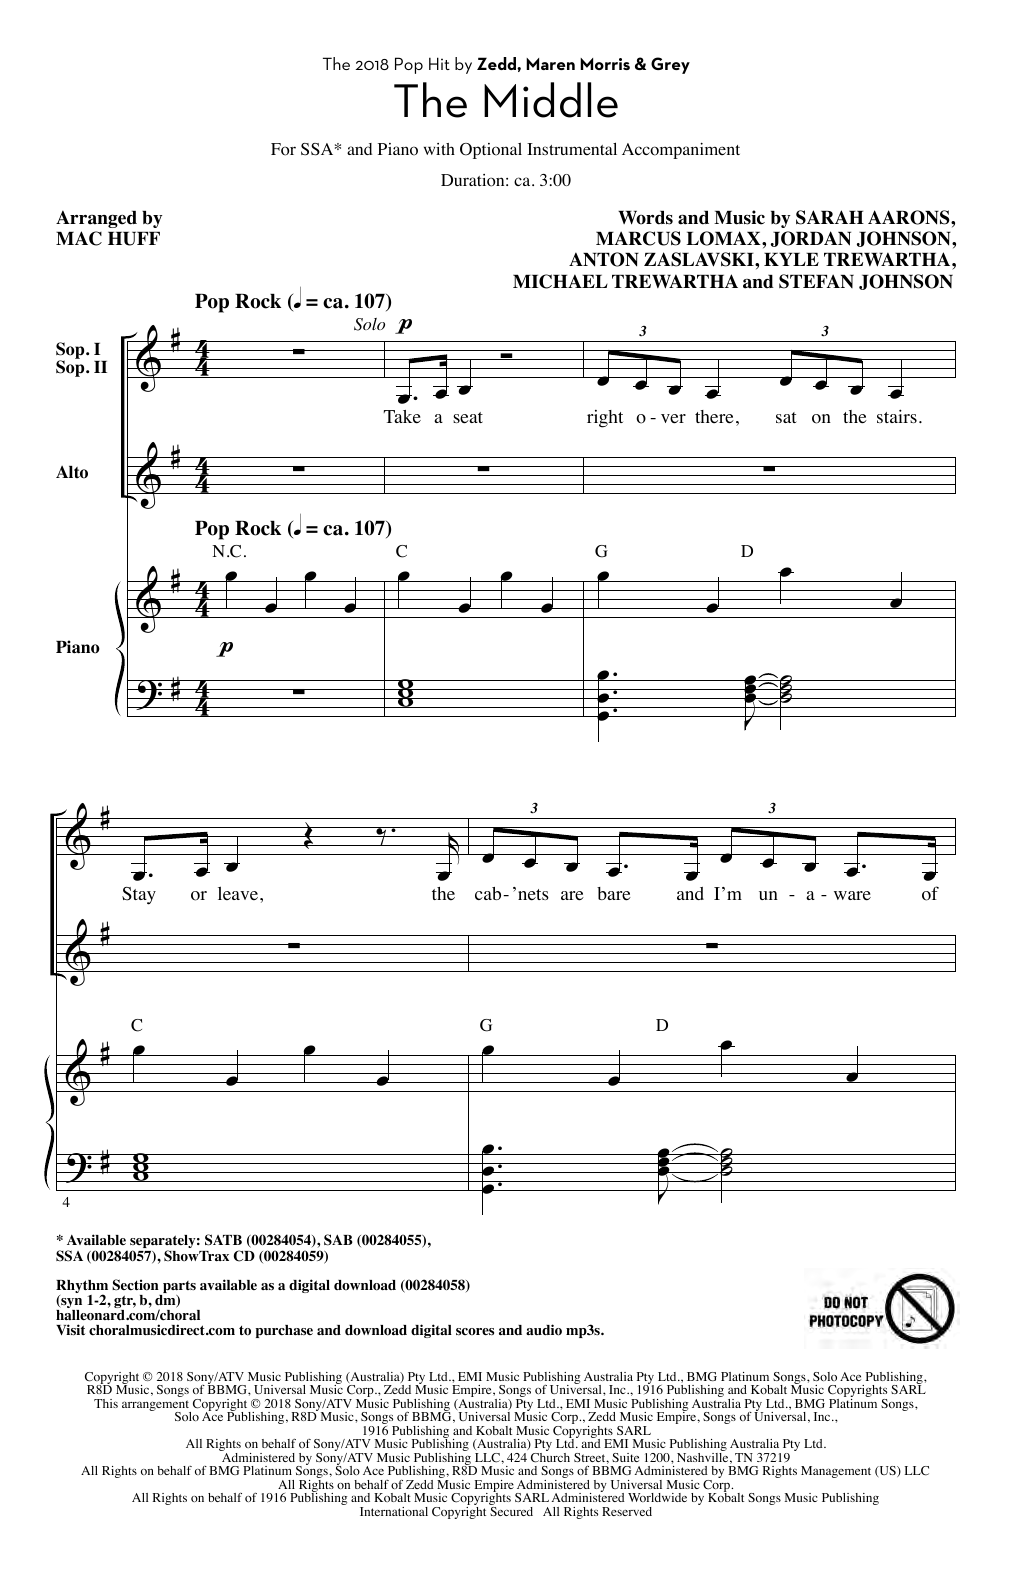 Zedd, Maren Morris & Grey The Middle (arr. Mac Huff) sheet music notes and chords arranged for SSA Choir